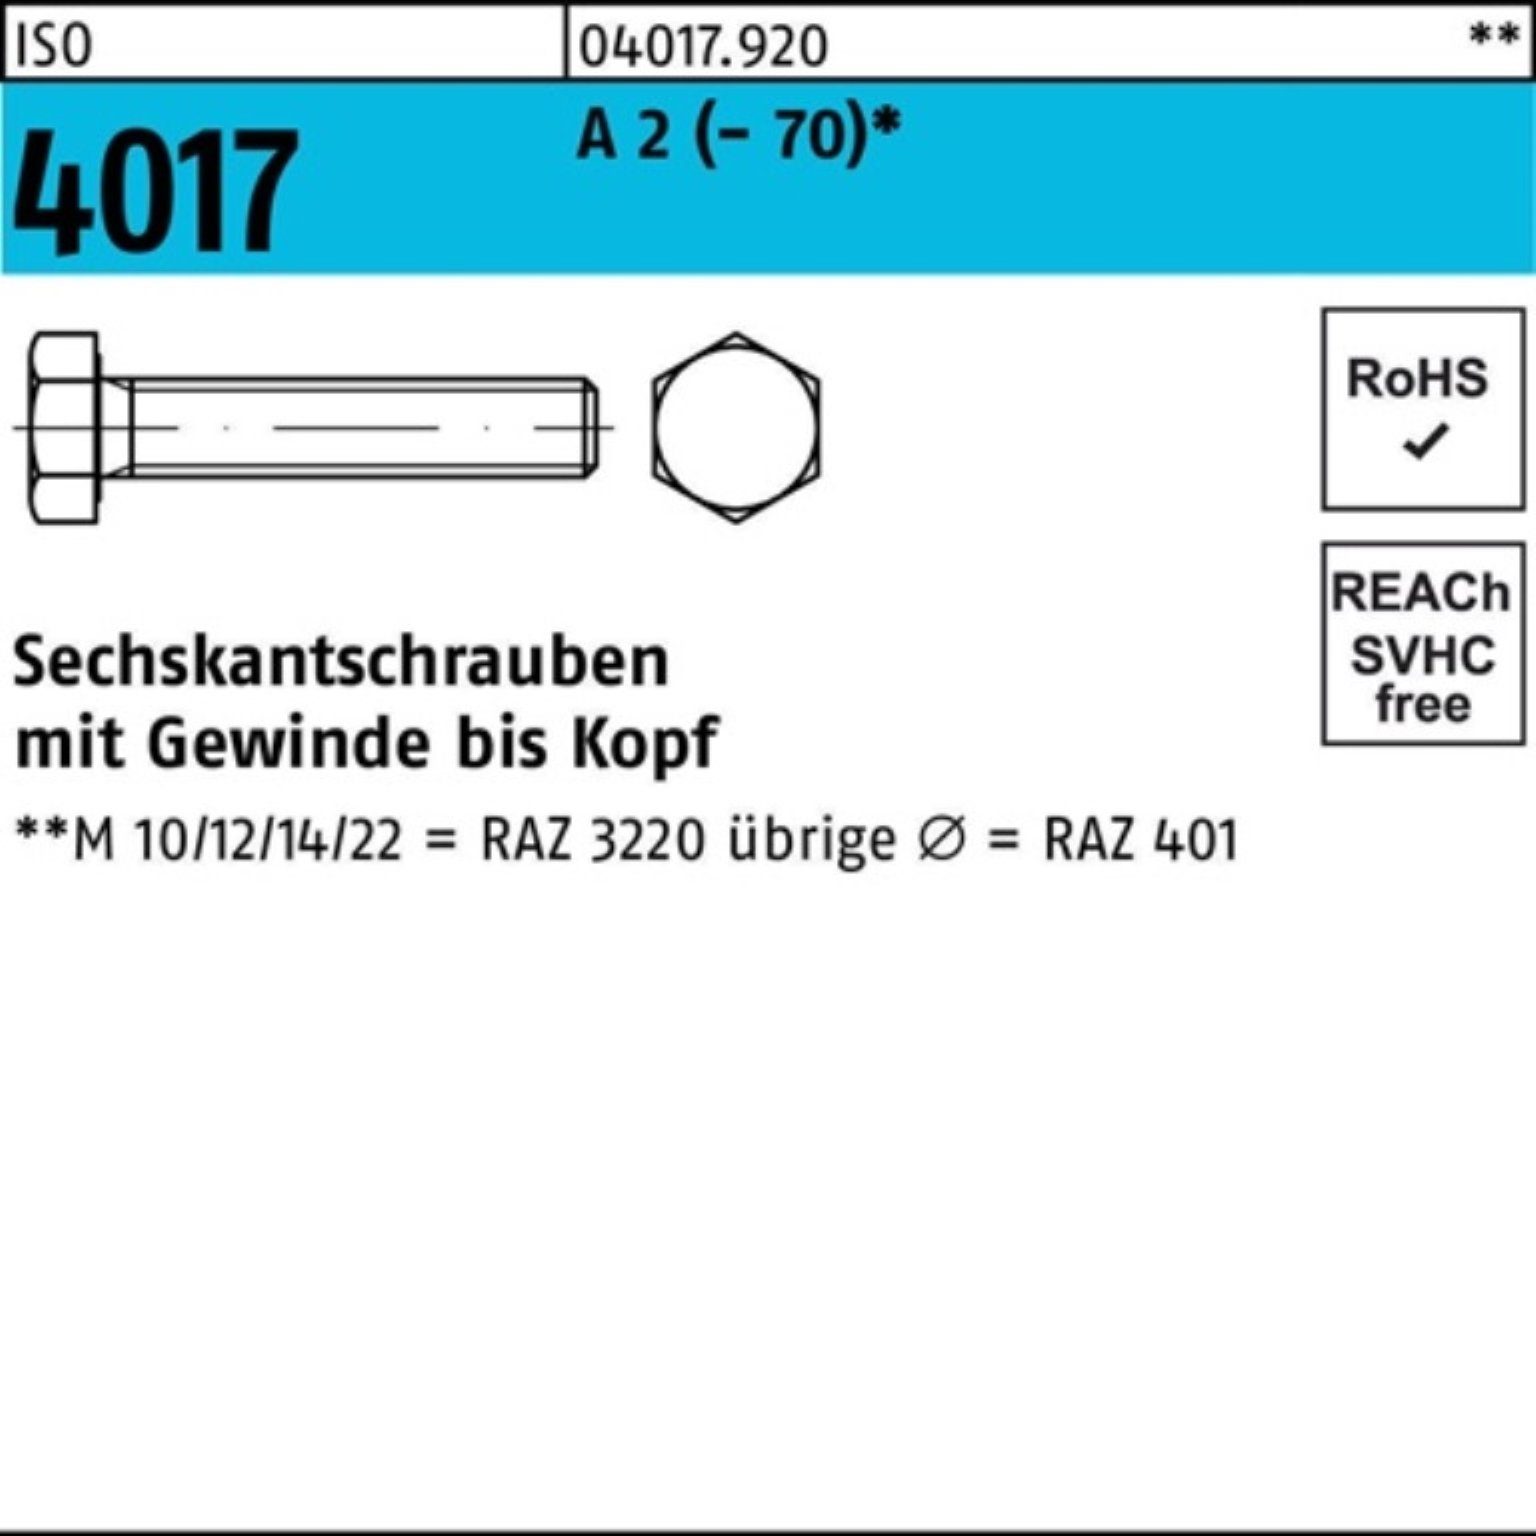 Bufab Sechskantschraube 200er Pack Sechskantschraube ISO 4017 VG M8x 18 A 2 (70) 200 Stück | Schrauben